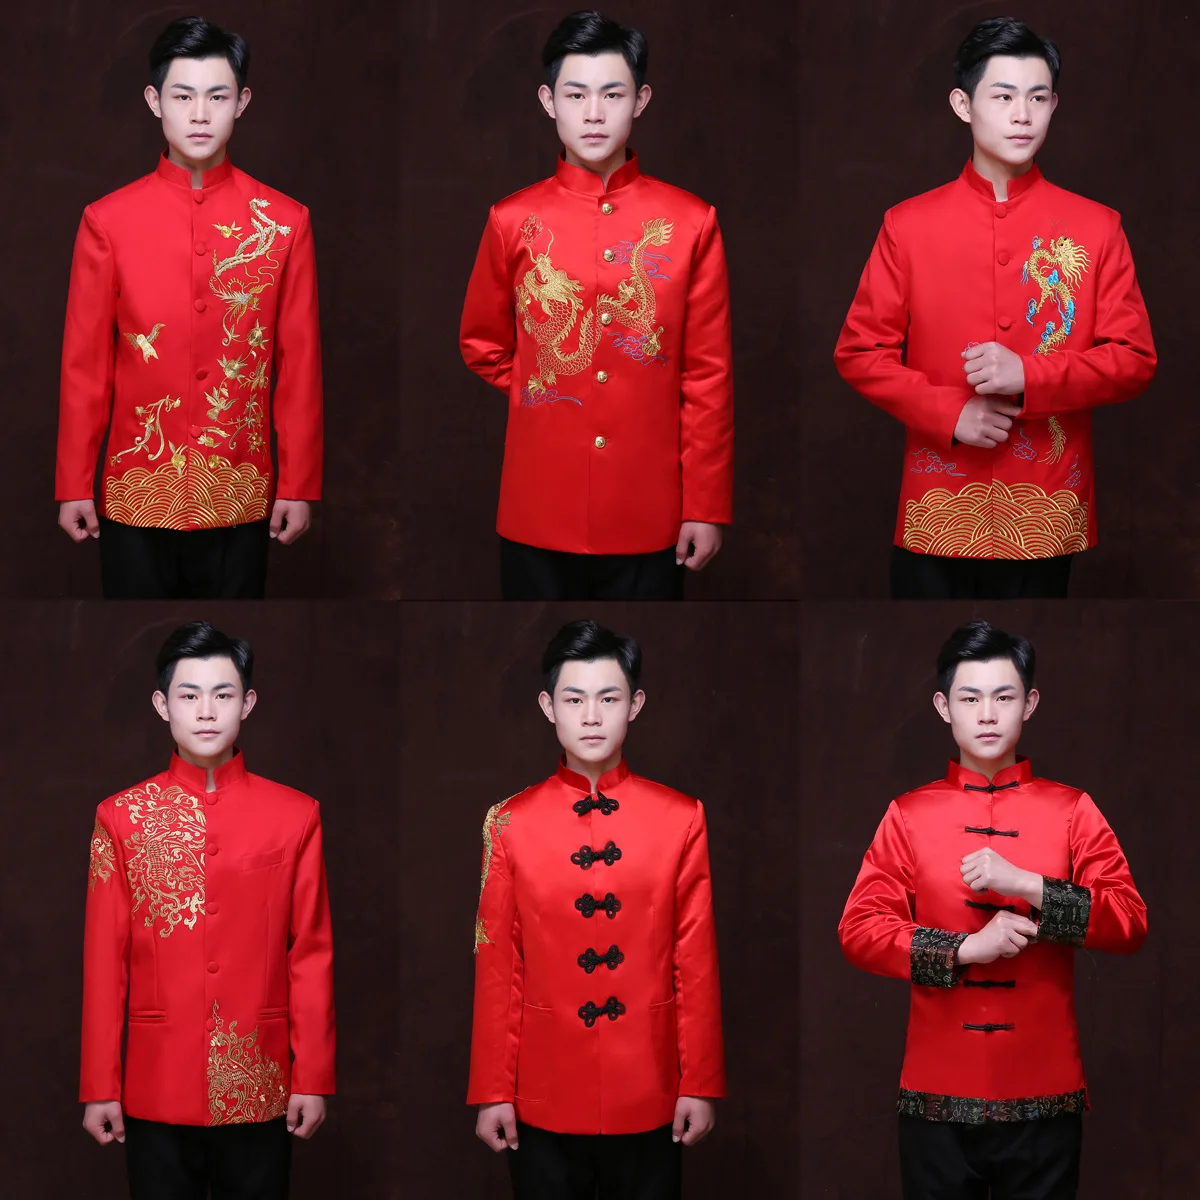 הסינית האדומה החתונה החתן ' קט גבר טוניקה טאנג תחפושת סינית מסורתית להתלבש הדרקון גברים Cheongsam העליון תחפושת 90 - 0